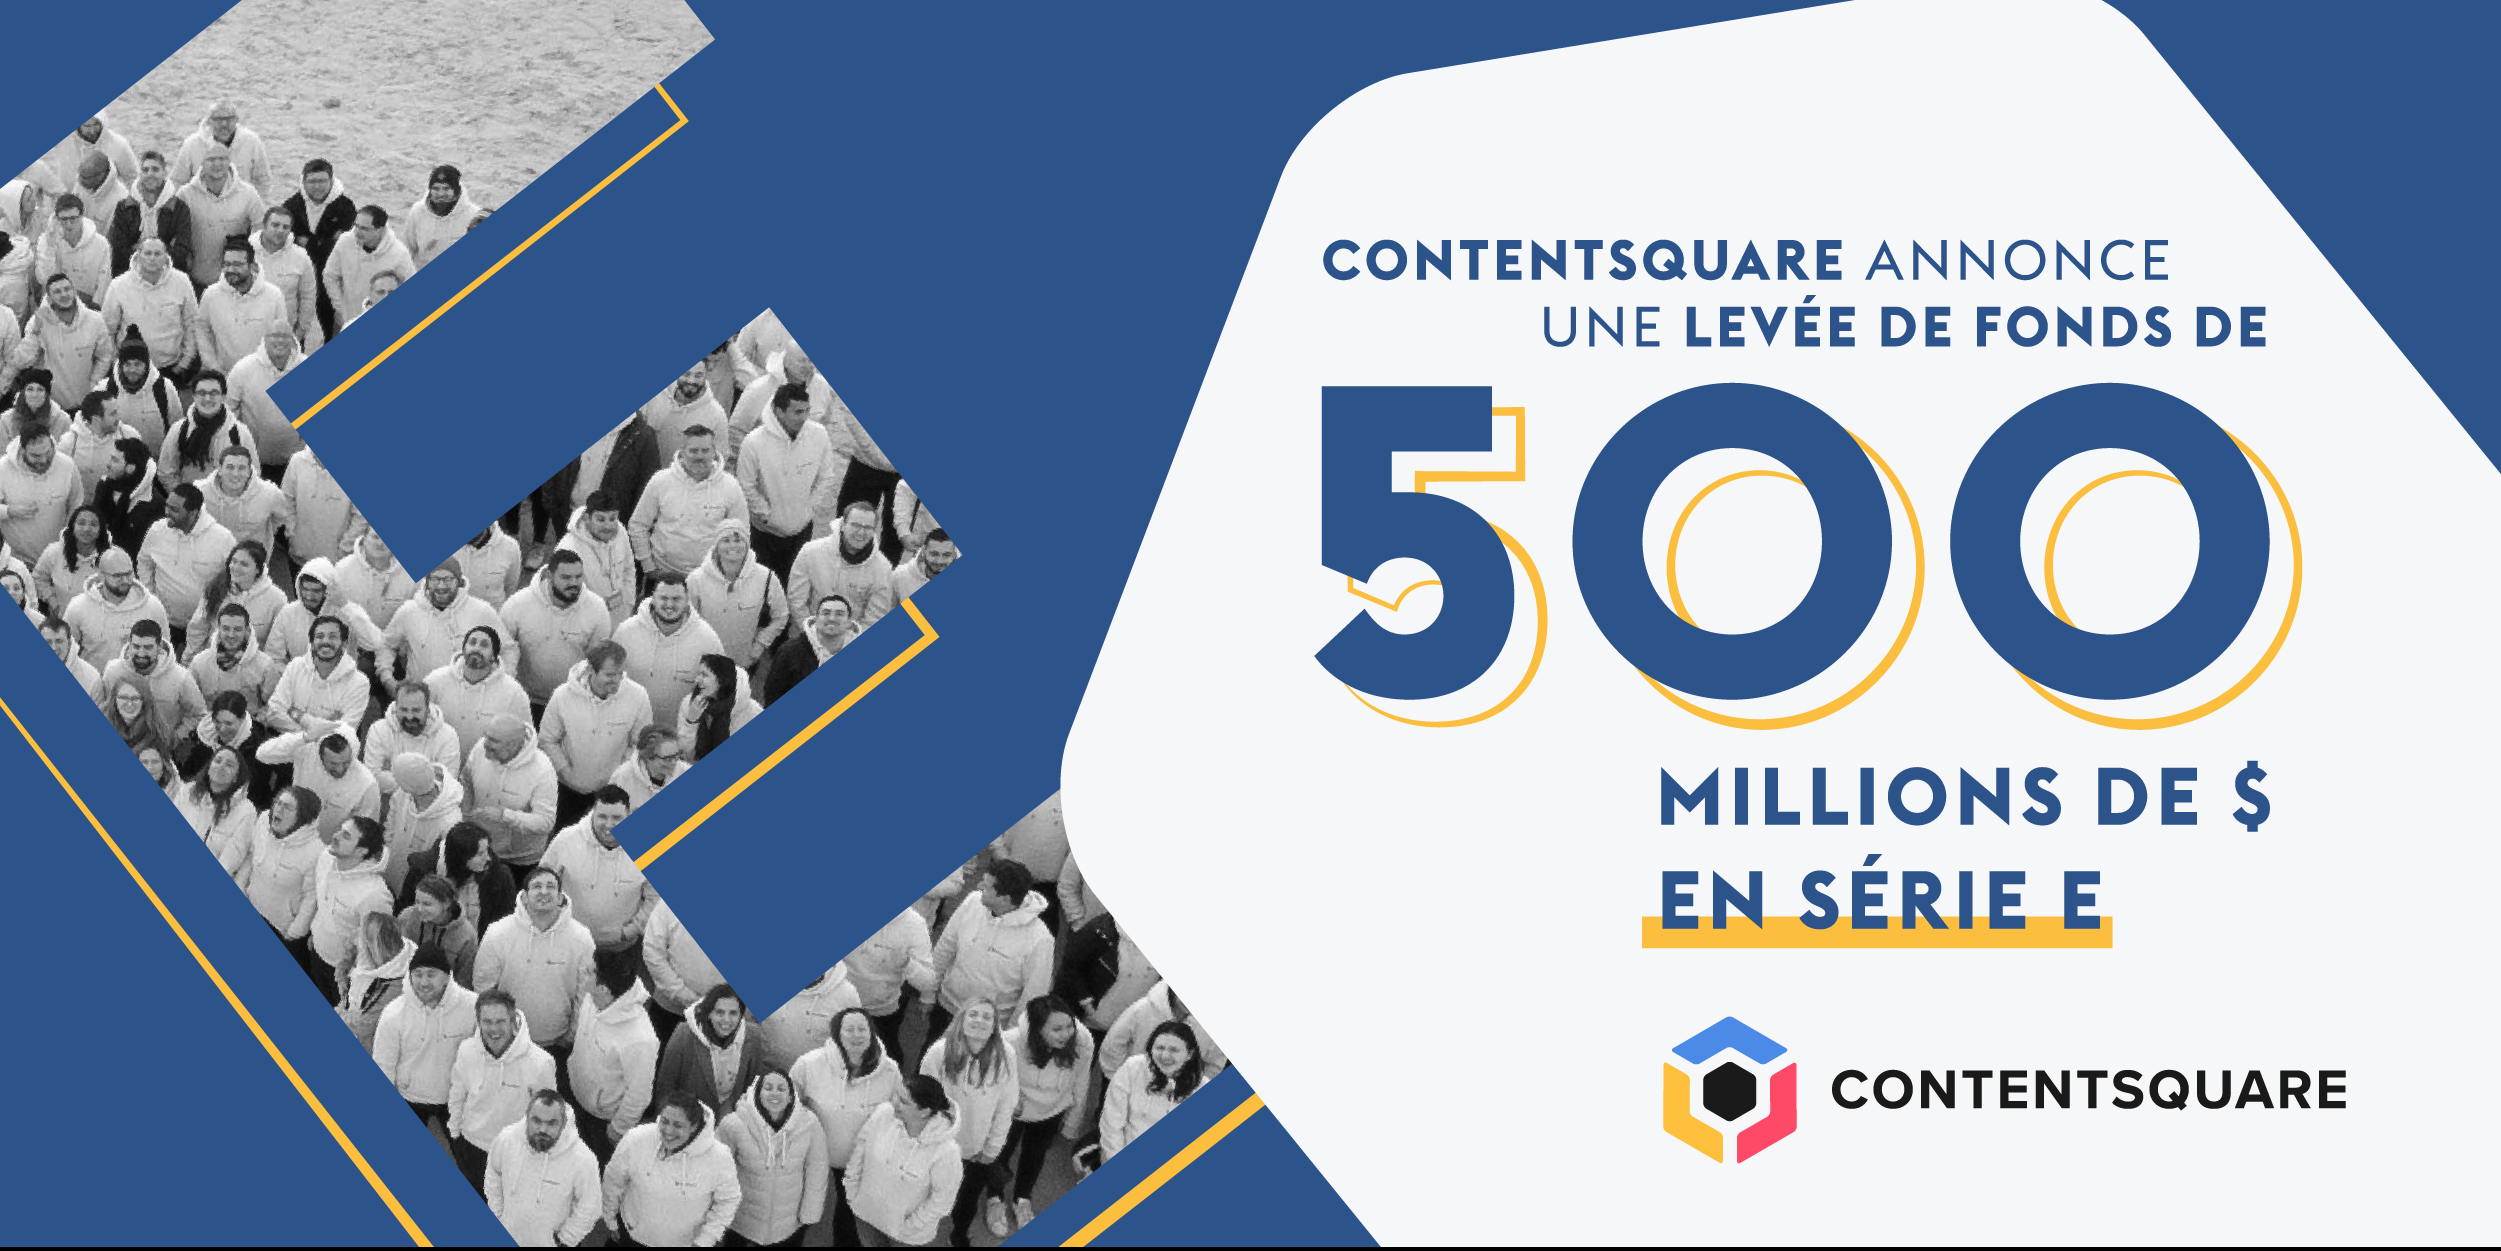 Photo of La start-up Contentsquare réalise une levée de fonds de 500 millions de dollars